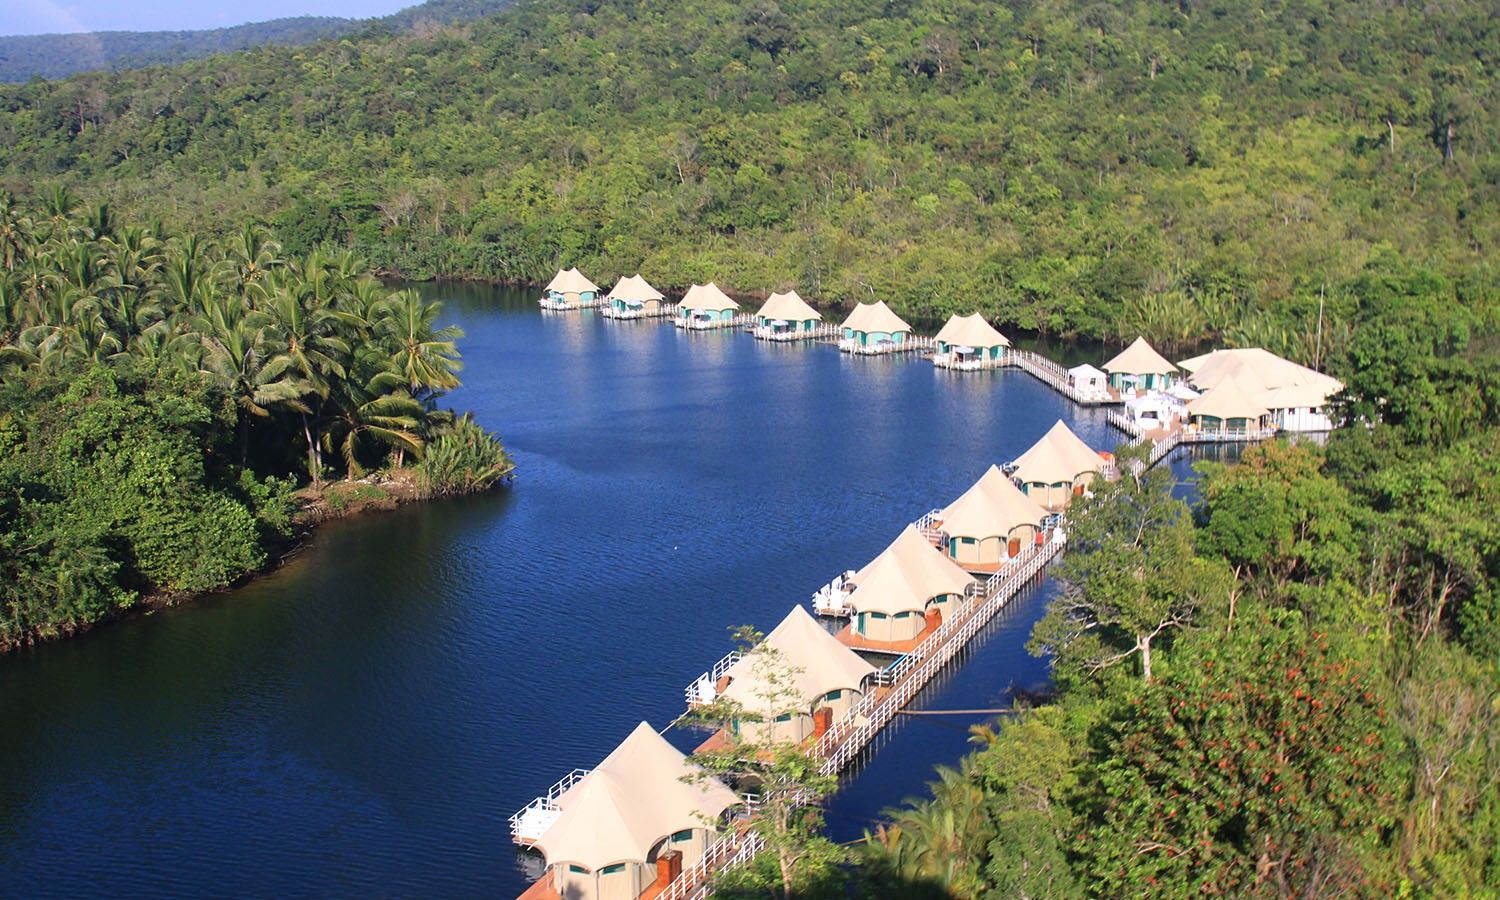 Gl39 Cambodia Stays 4 Rivers Floating Lodge 1 1500x900 B3958eee29615e244becd04a37e98526 Jpg